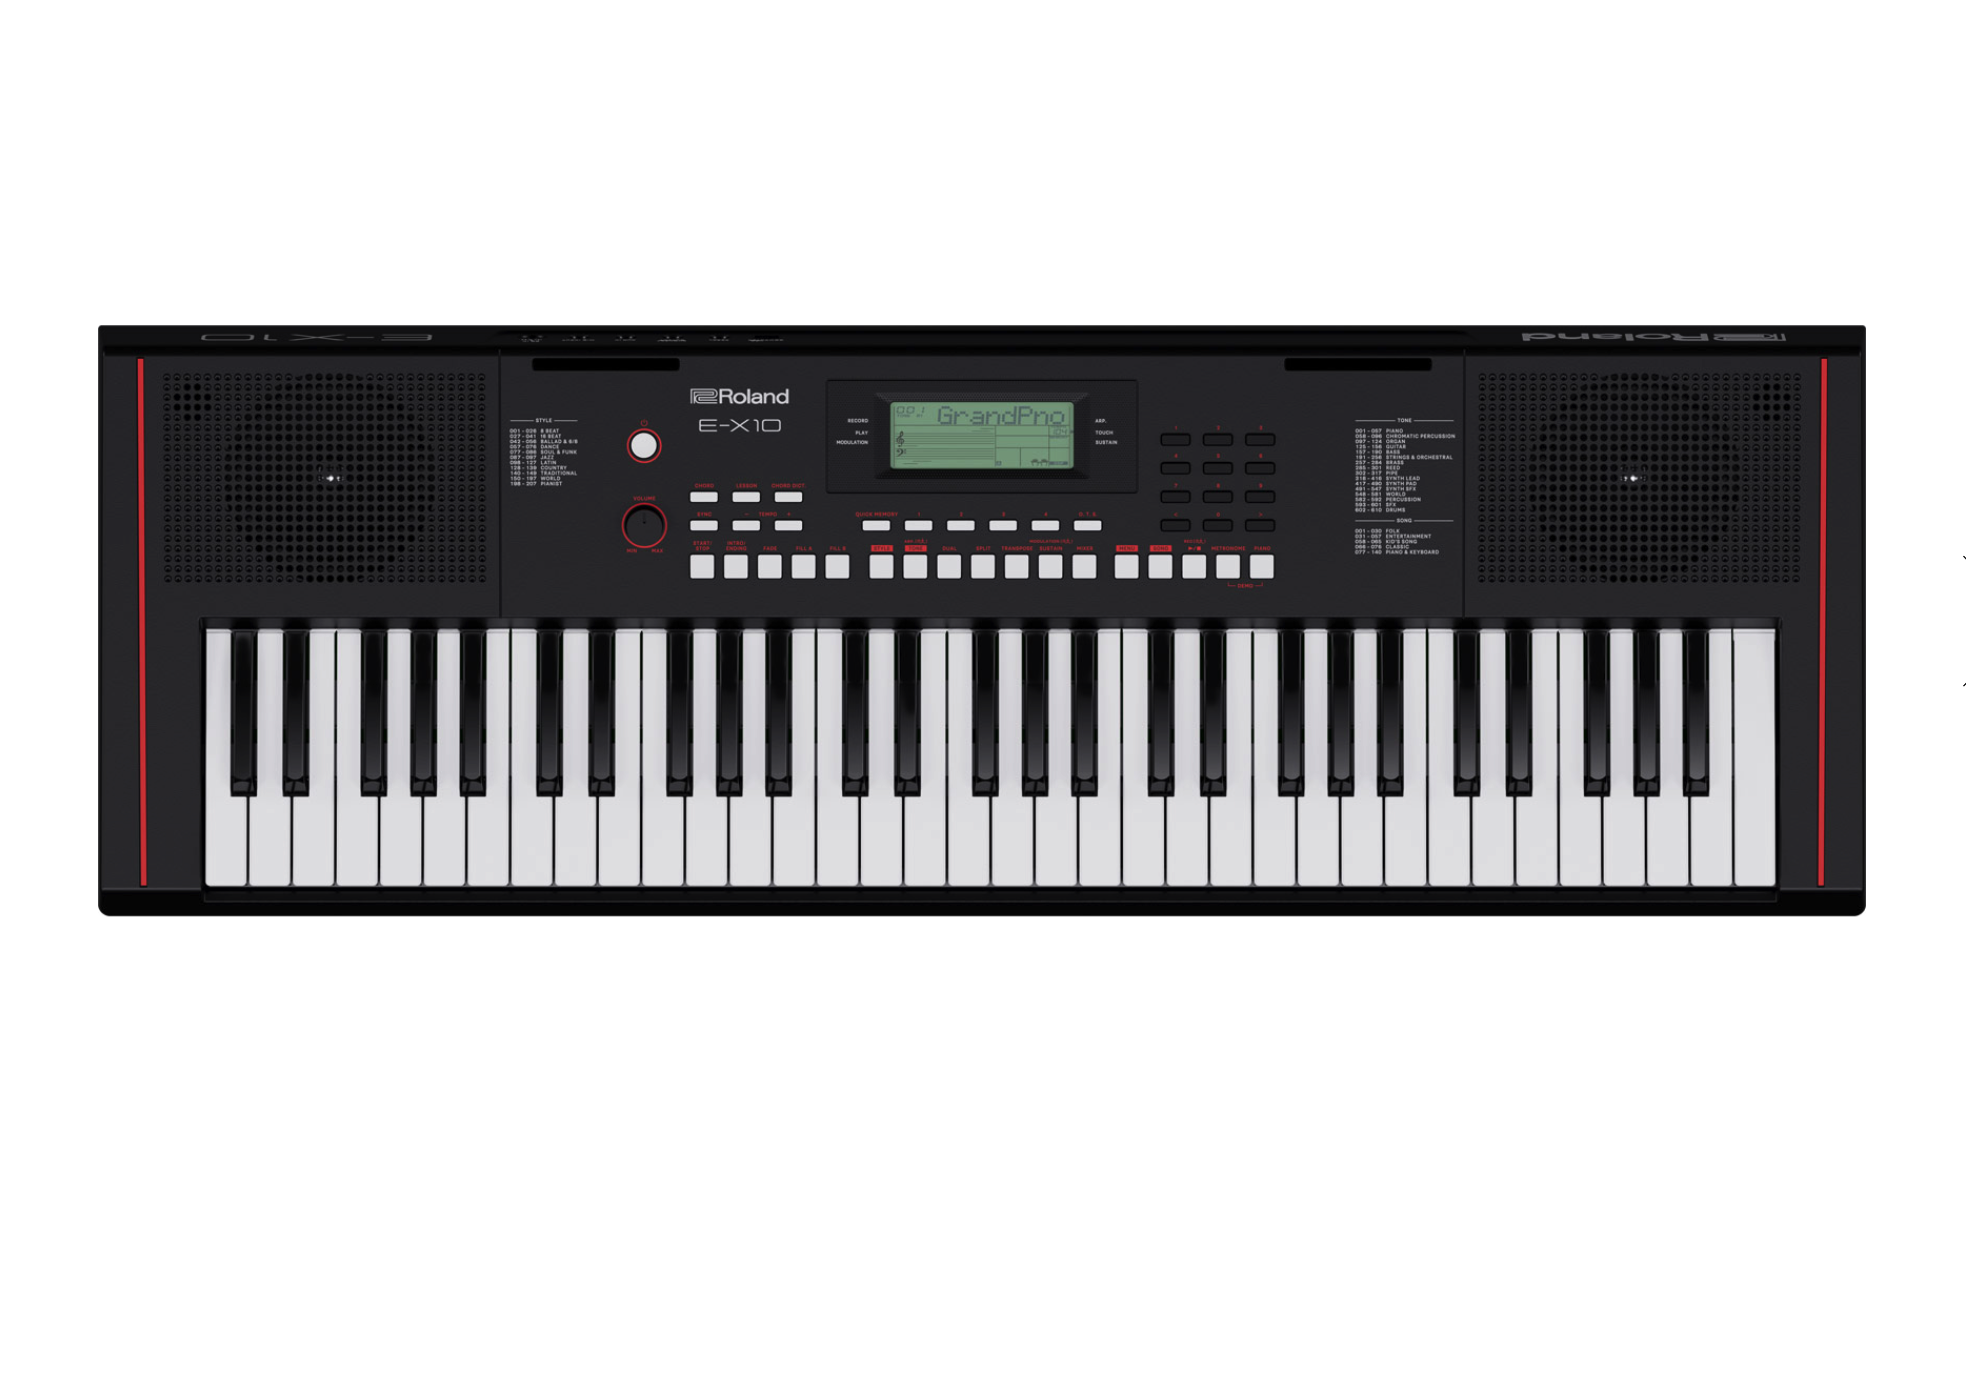 Roland E-x10 keyboard